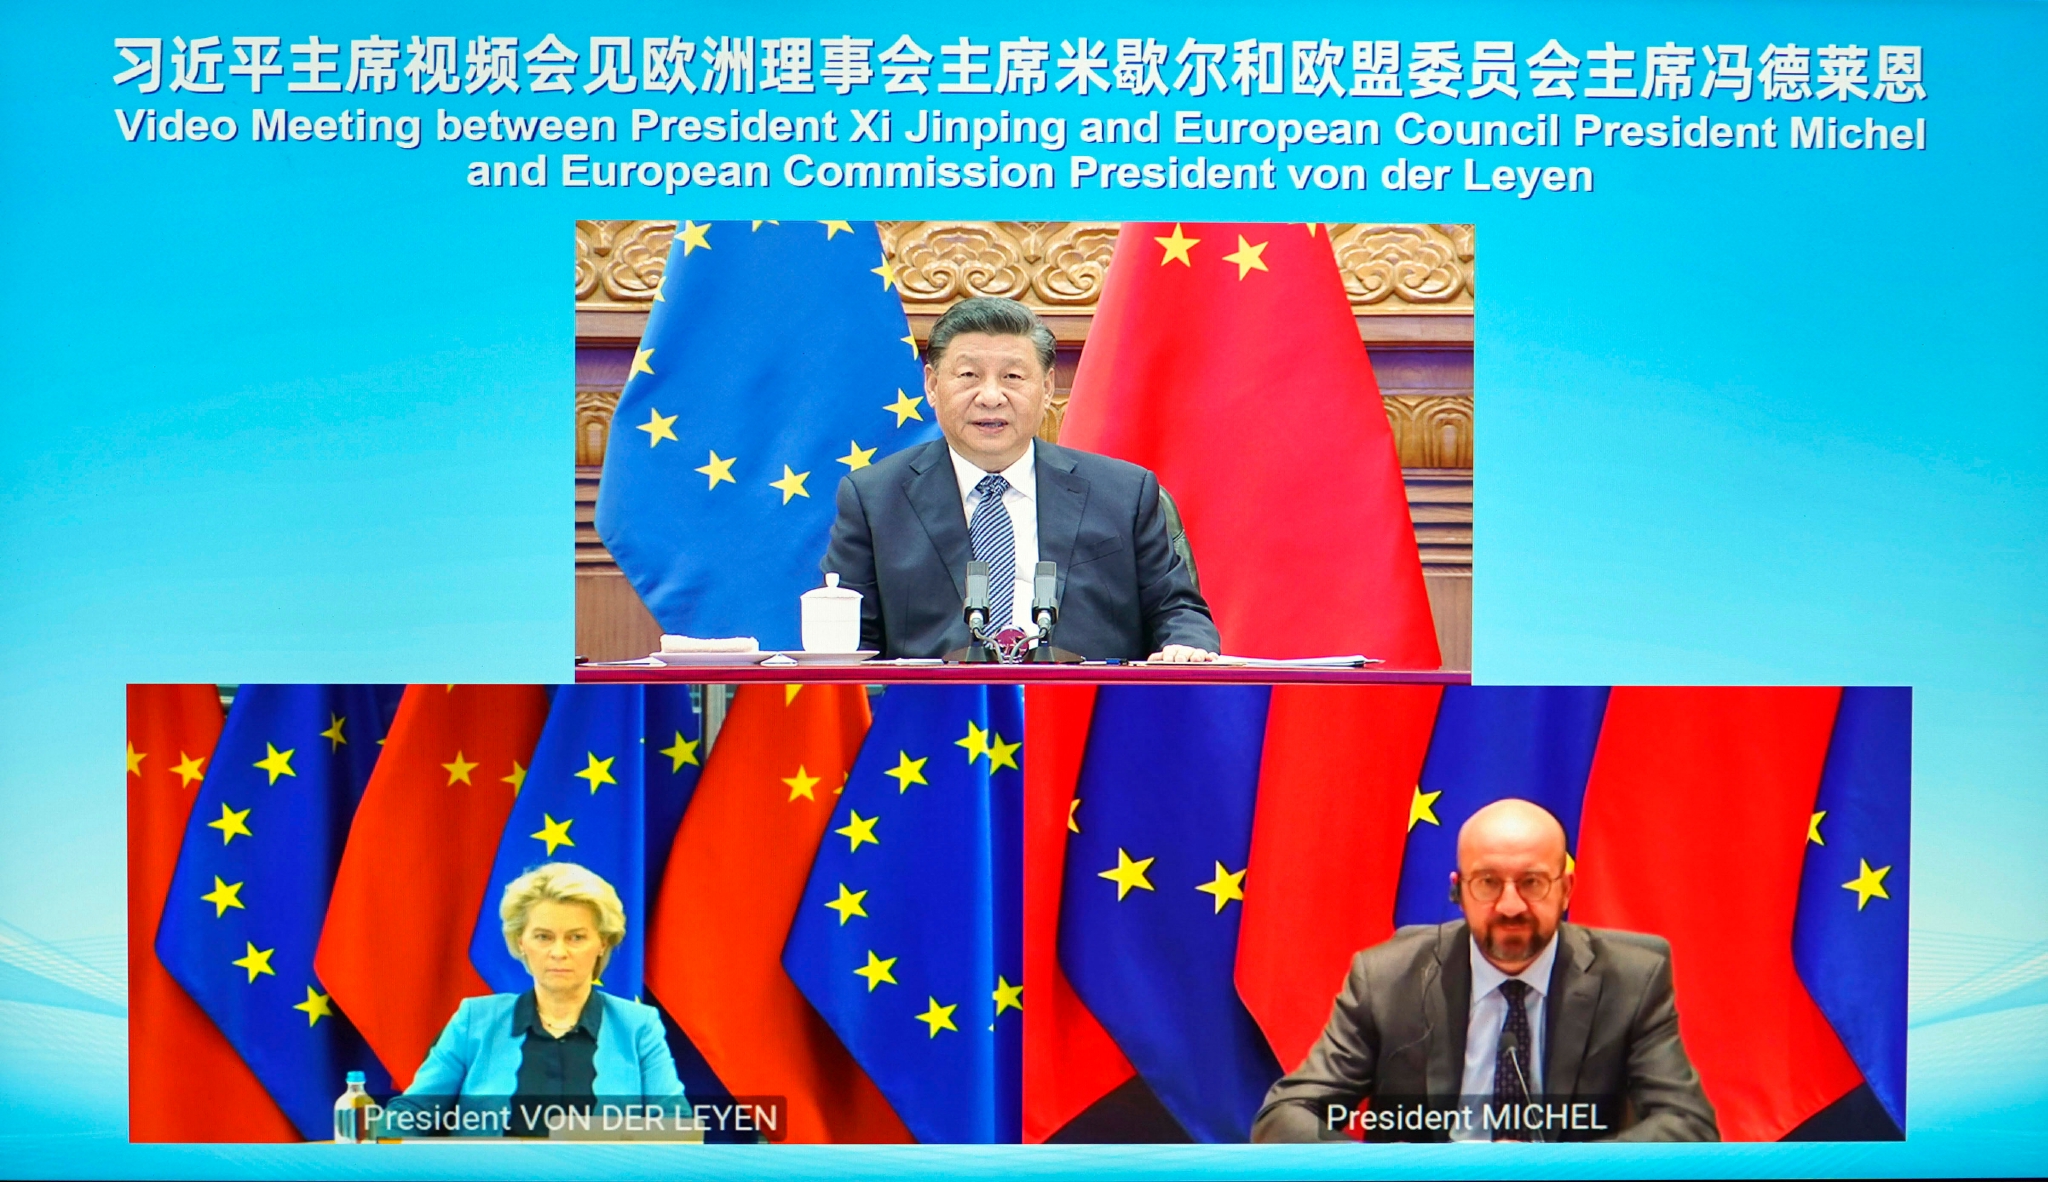 4月1日晚，国家主席习近平在北京以视频方式会见欧洲理事会主席米歇尔和欧盟委员会主席冯德莱恩。